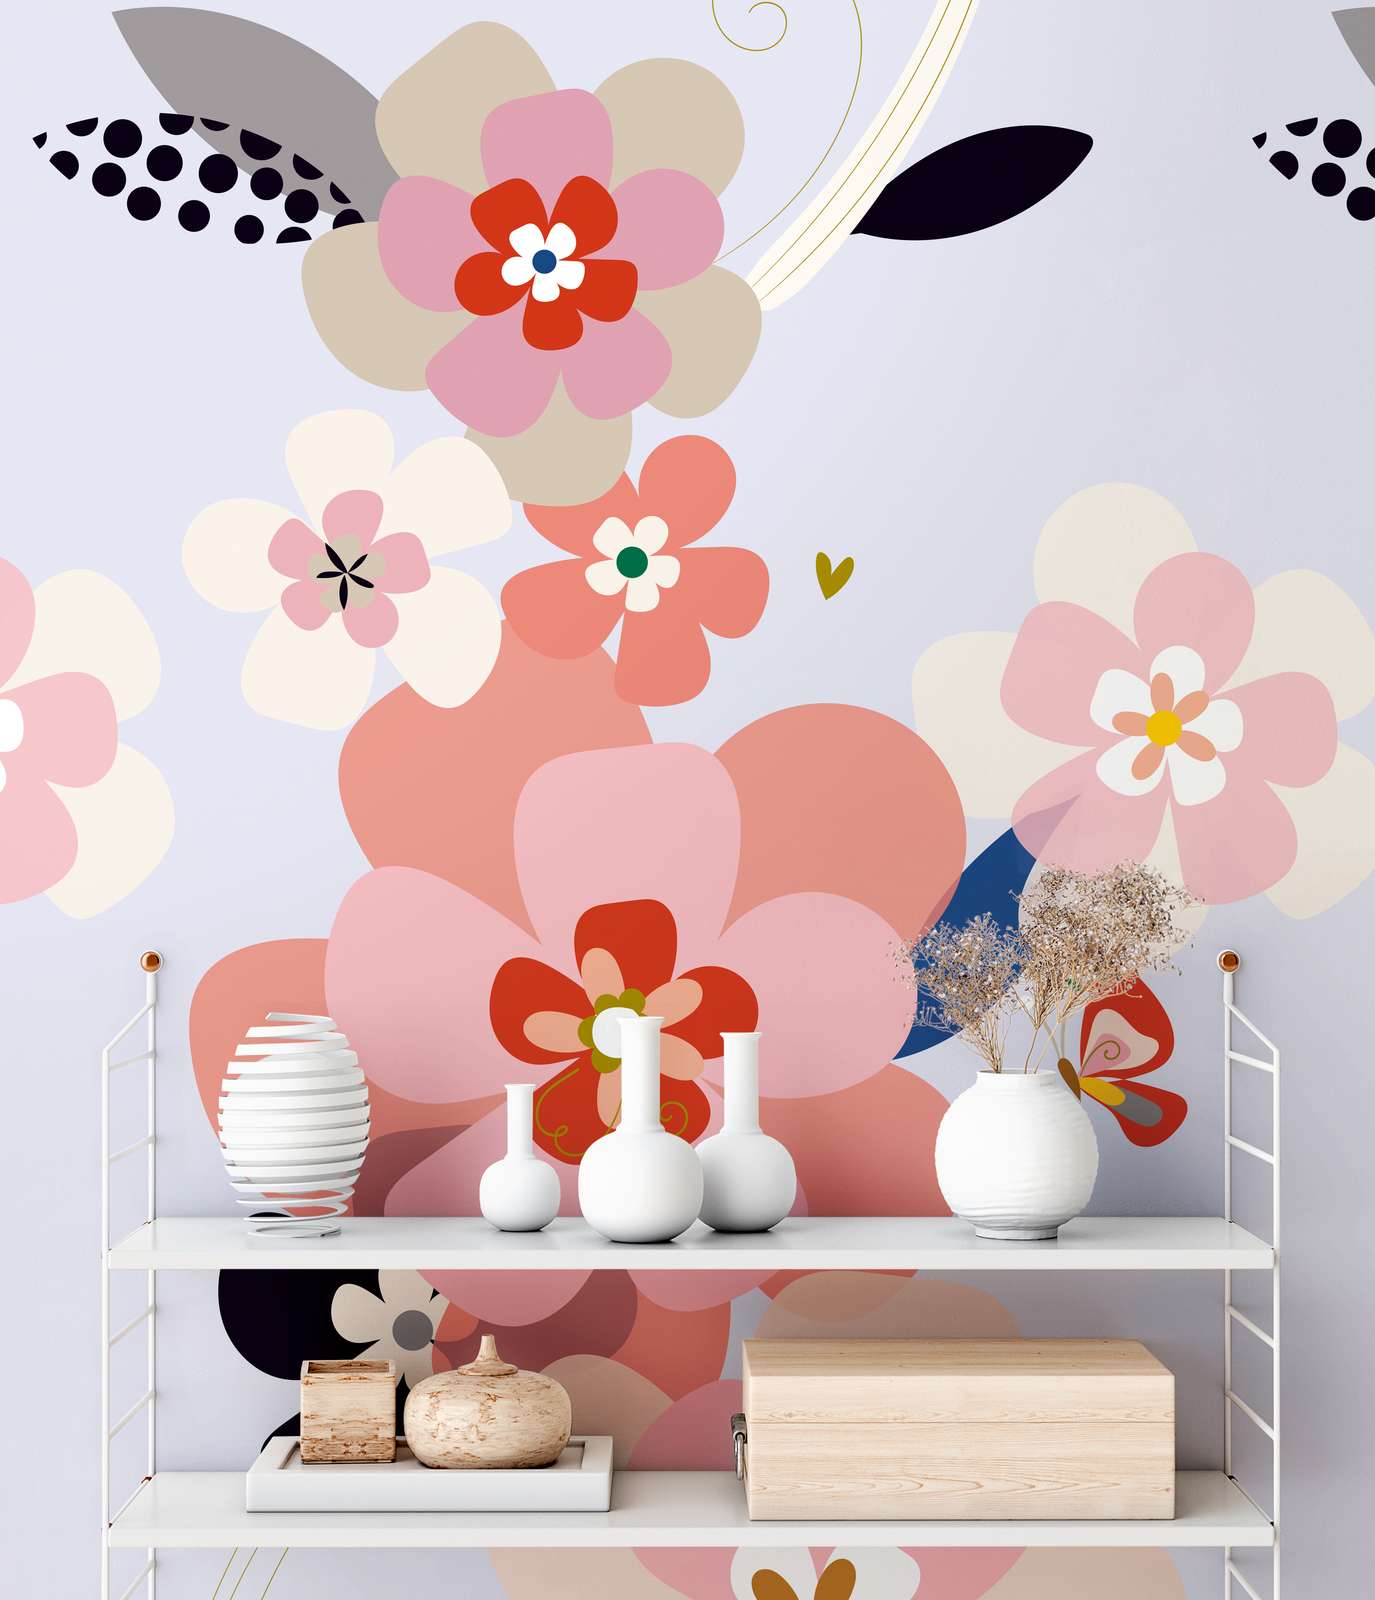             Papel pintado con motivos florales en estilo minimalista - multicolor, rosa, lila
        